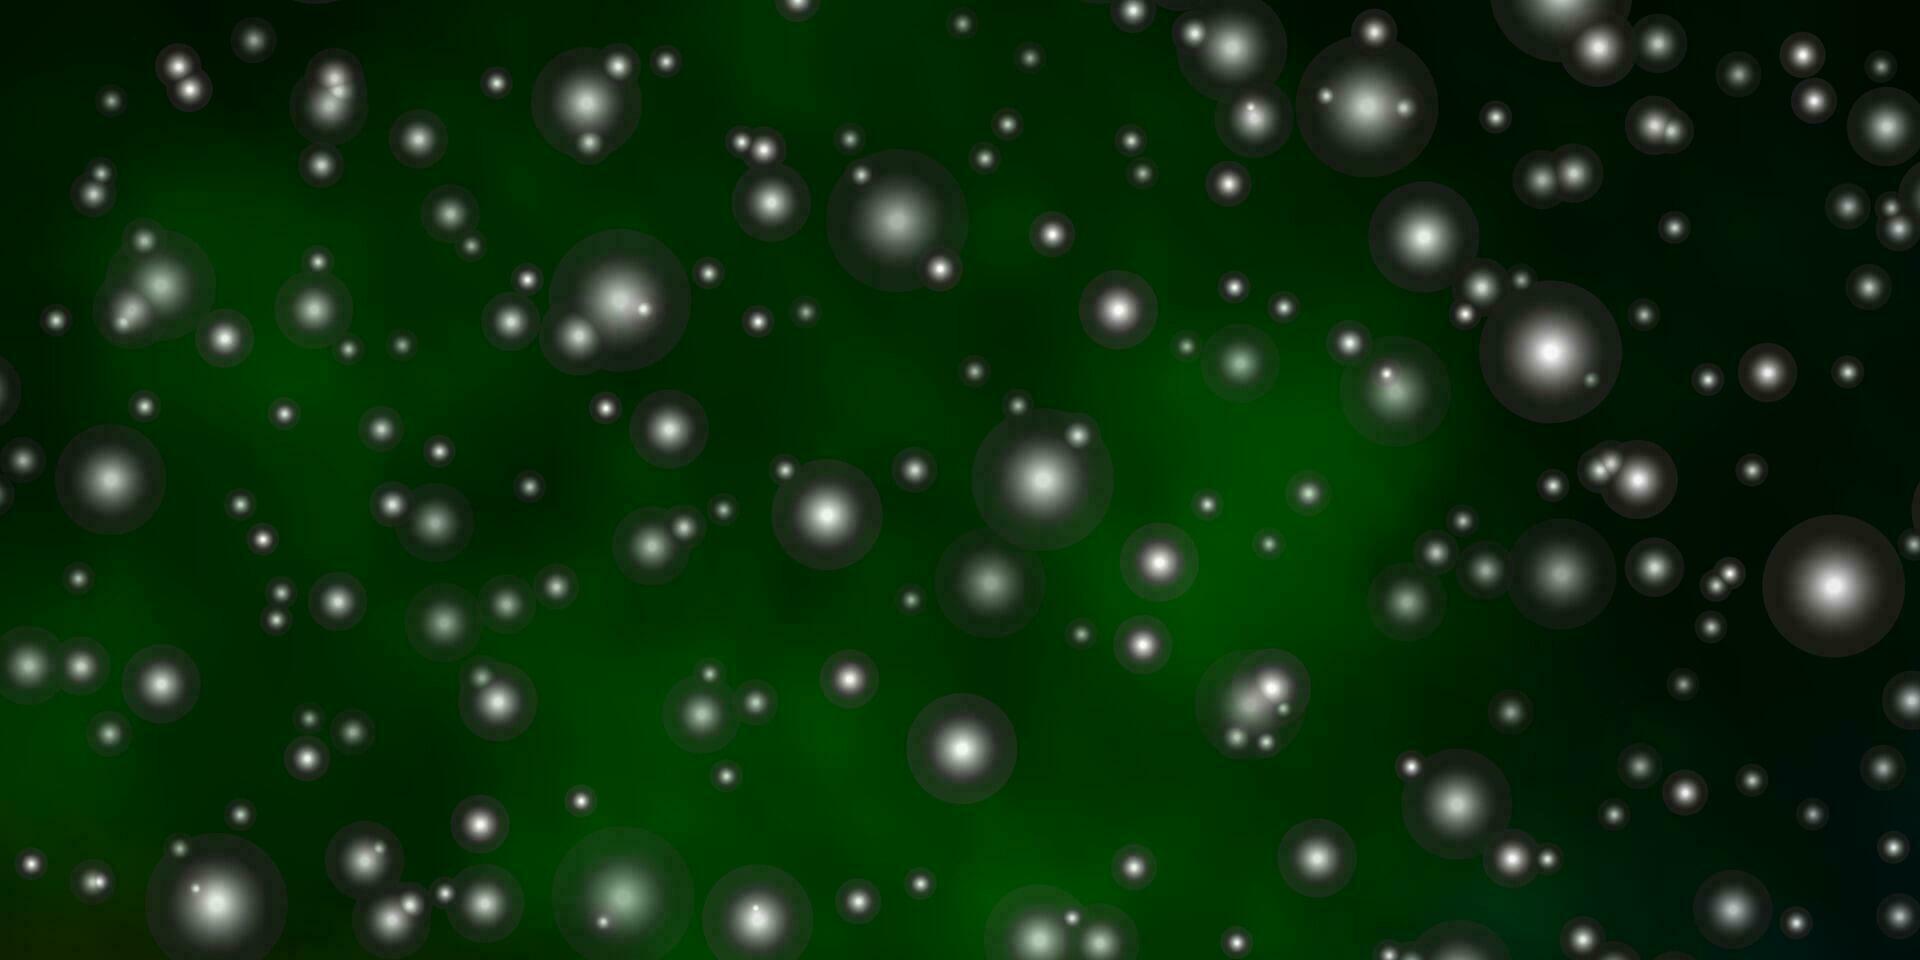 sfondo vettoriale verde scuro con stelle colorate.